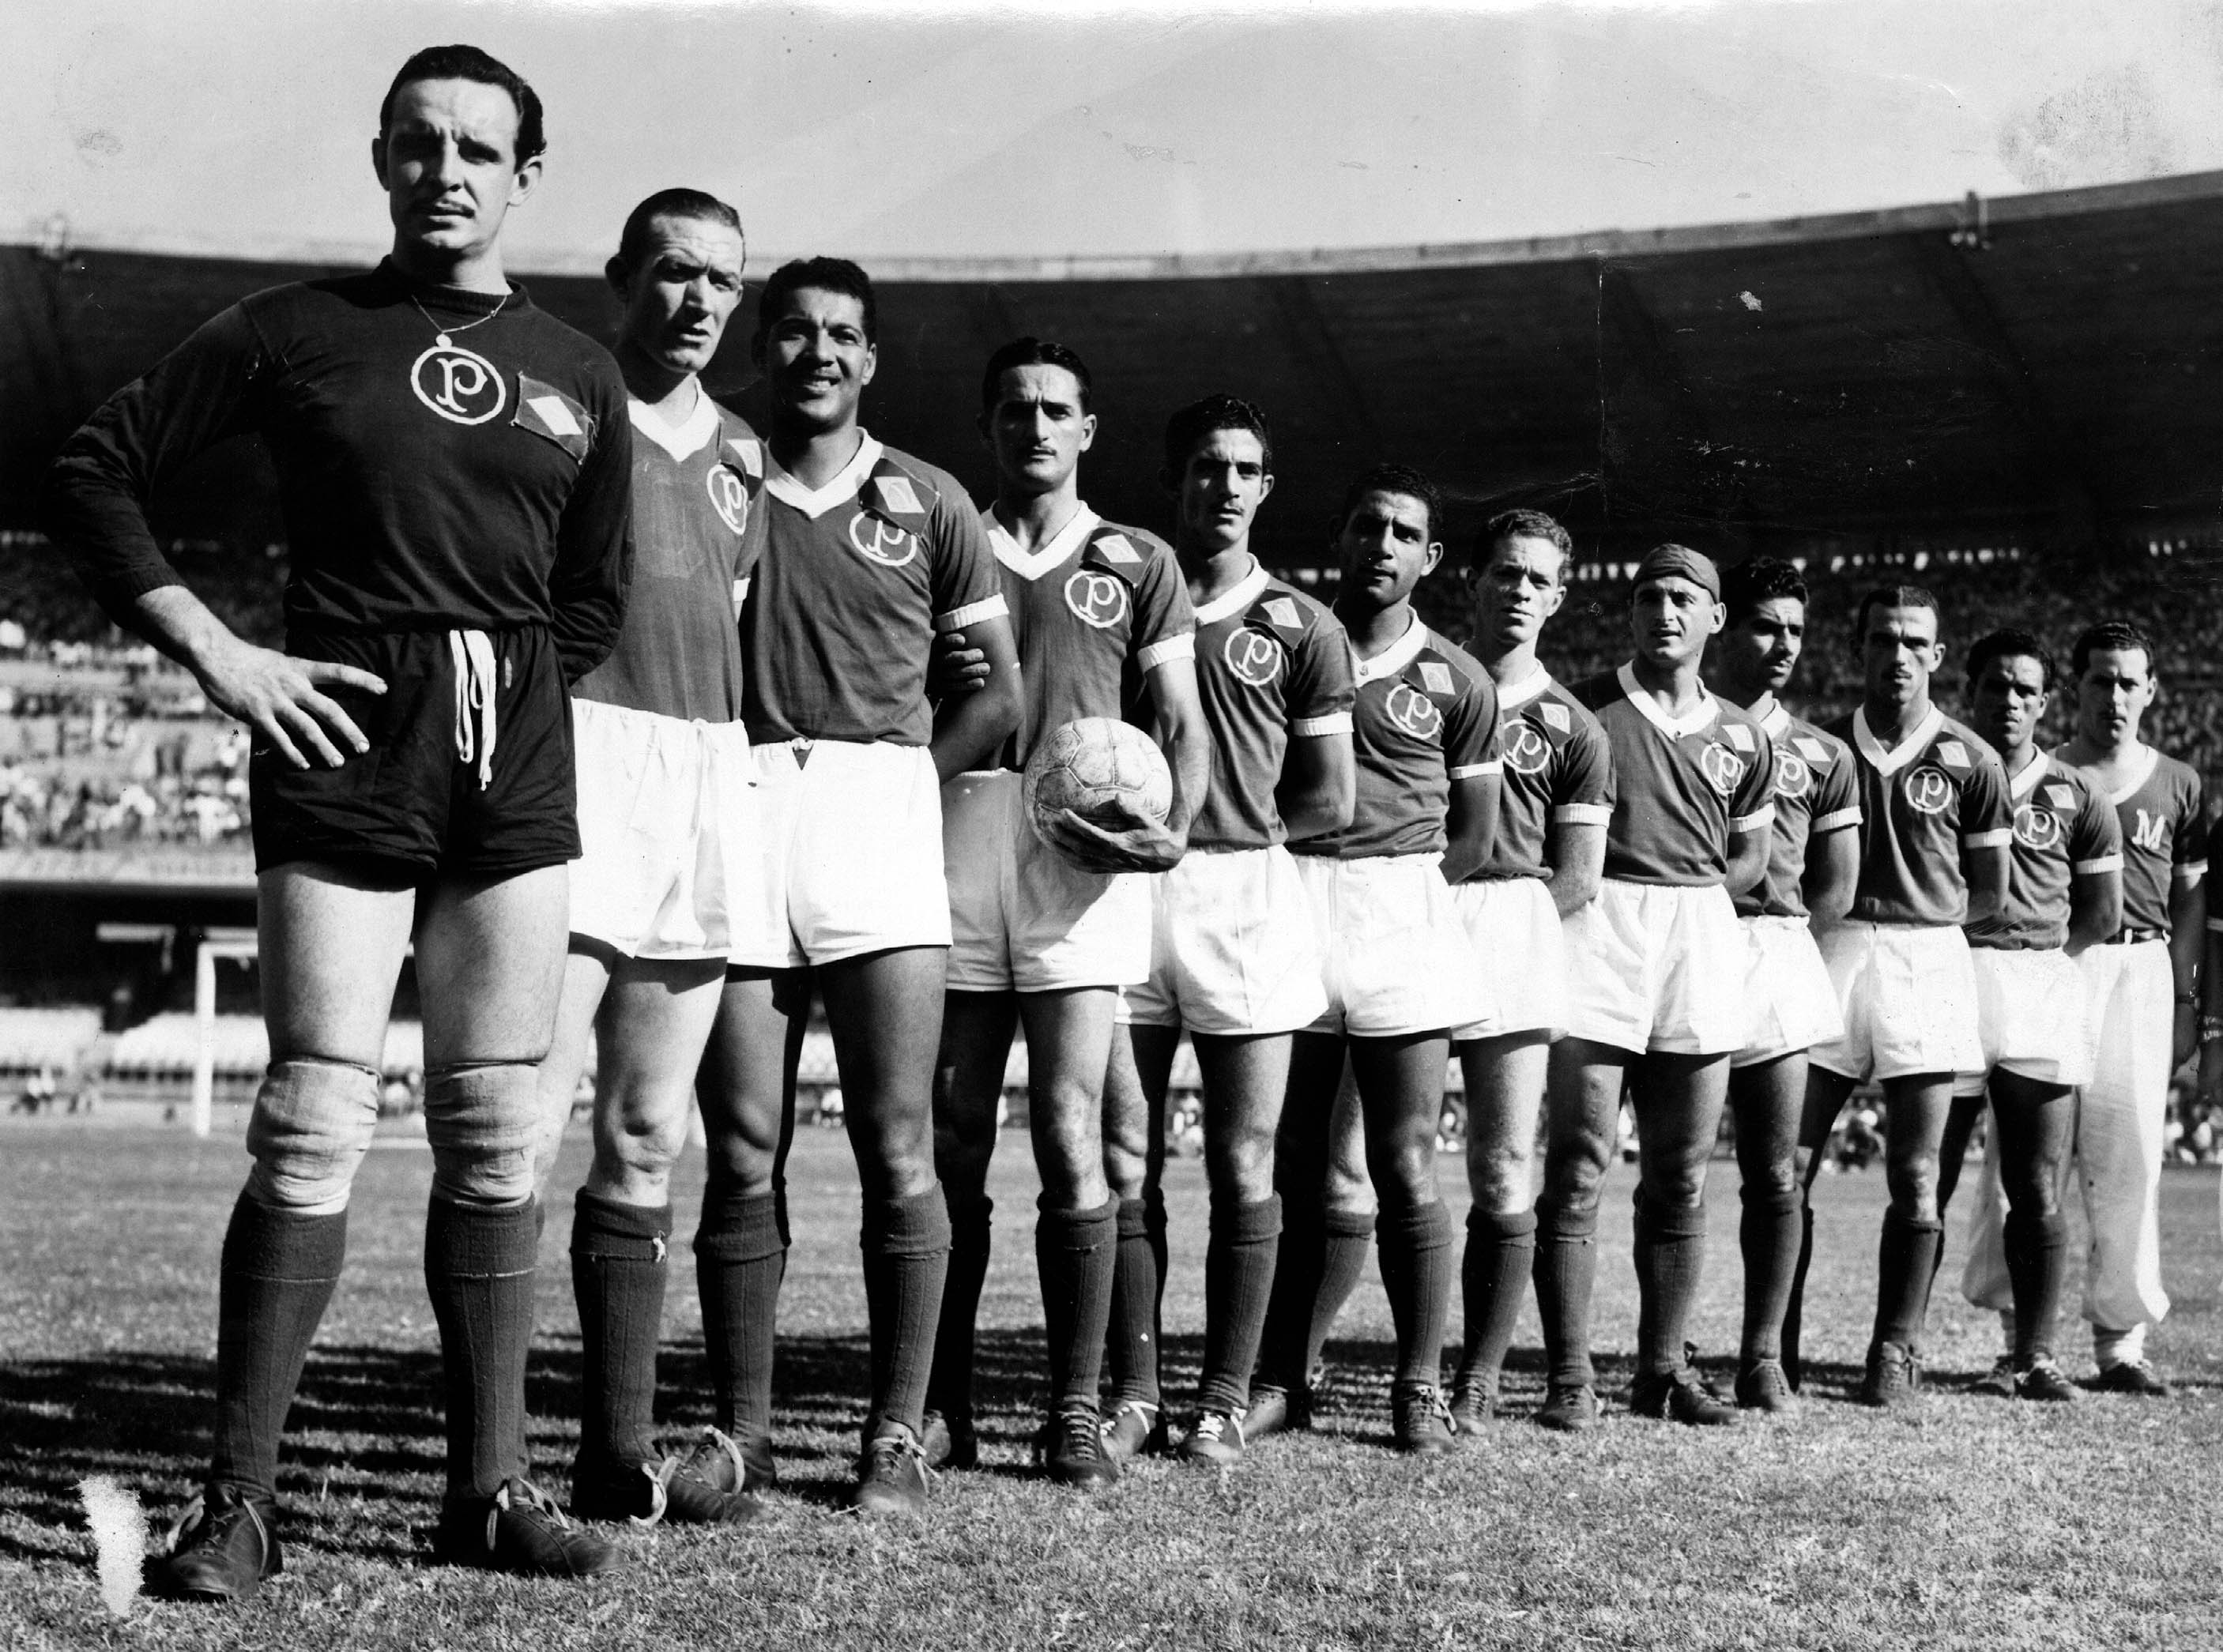 Copa Rio de 1951 – Wikipédia, a enciclopédia livre